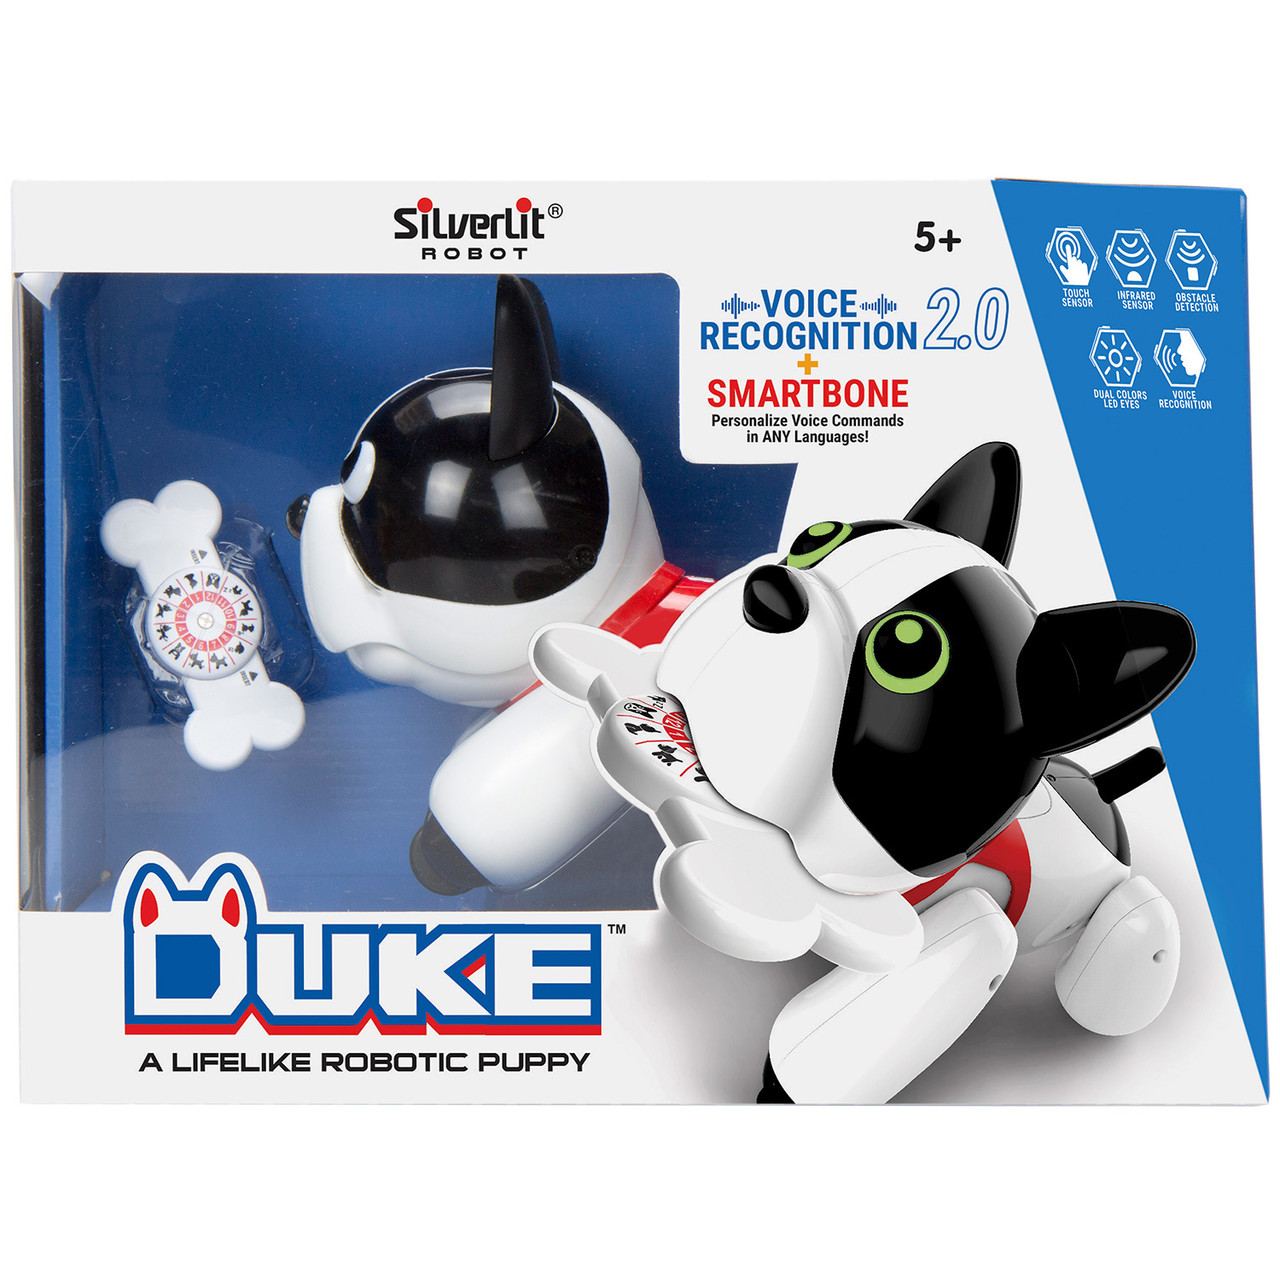 Интерактивная собака-робот Дюк, Duke (свет, звук, движение), новое поколение ПапБо, Pupbo